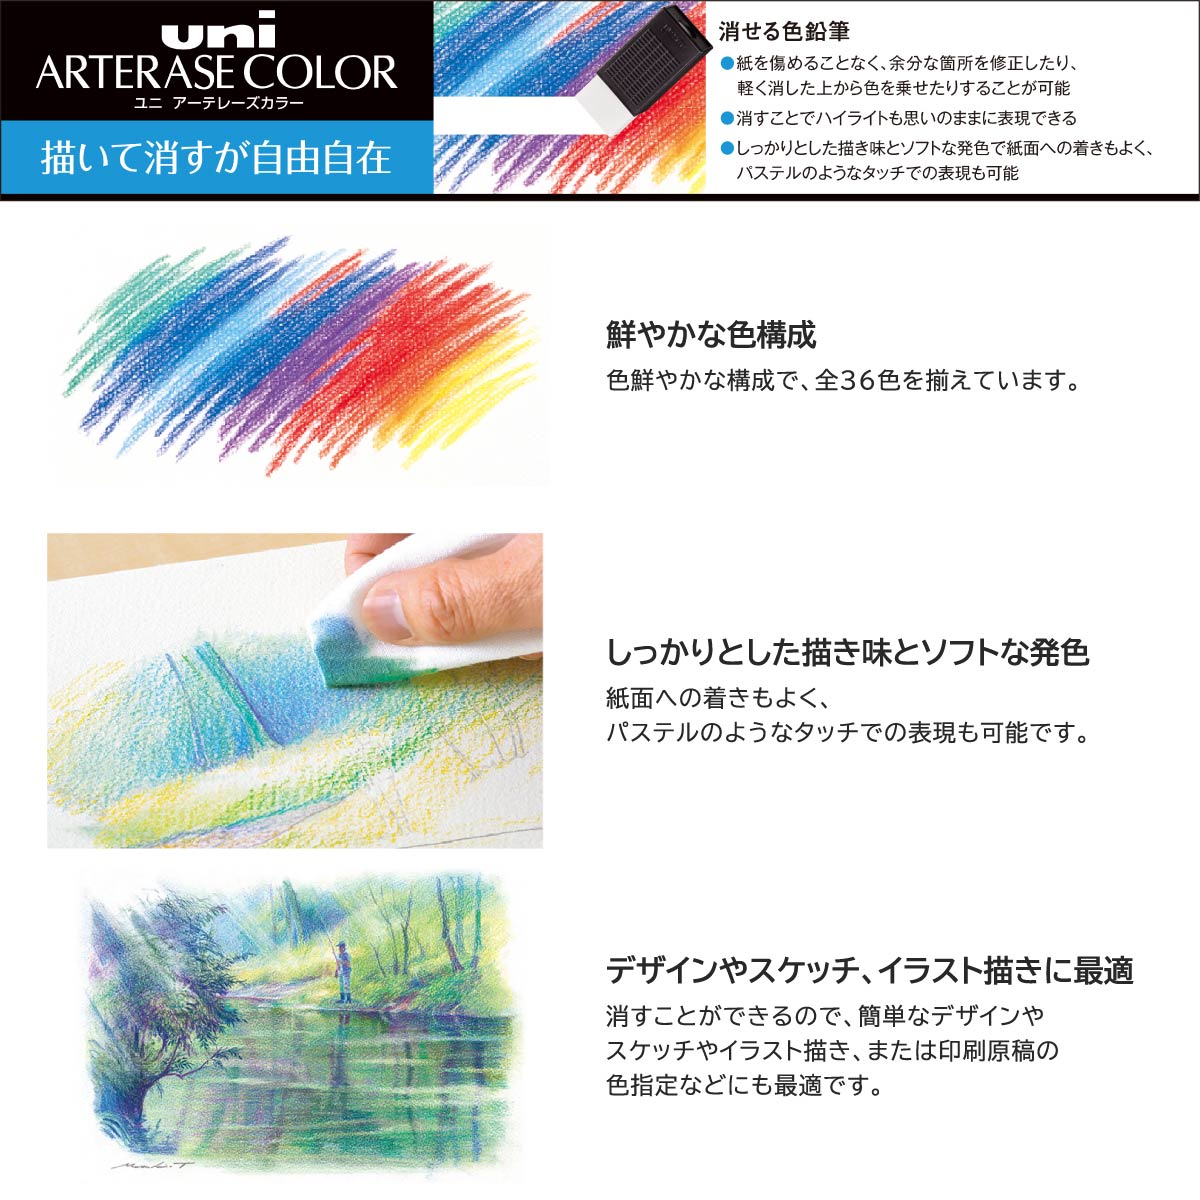  Mitsubishi карандаш Uni a-tere-z цвет 12 -цветный набор 